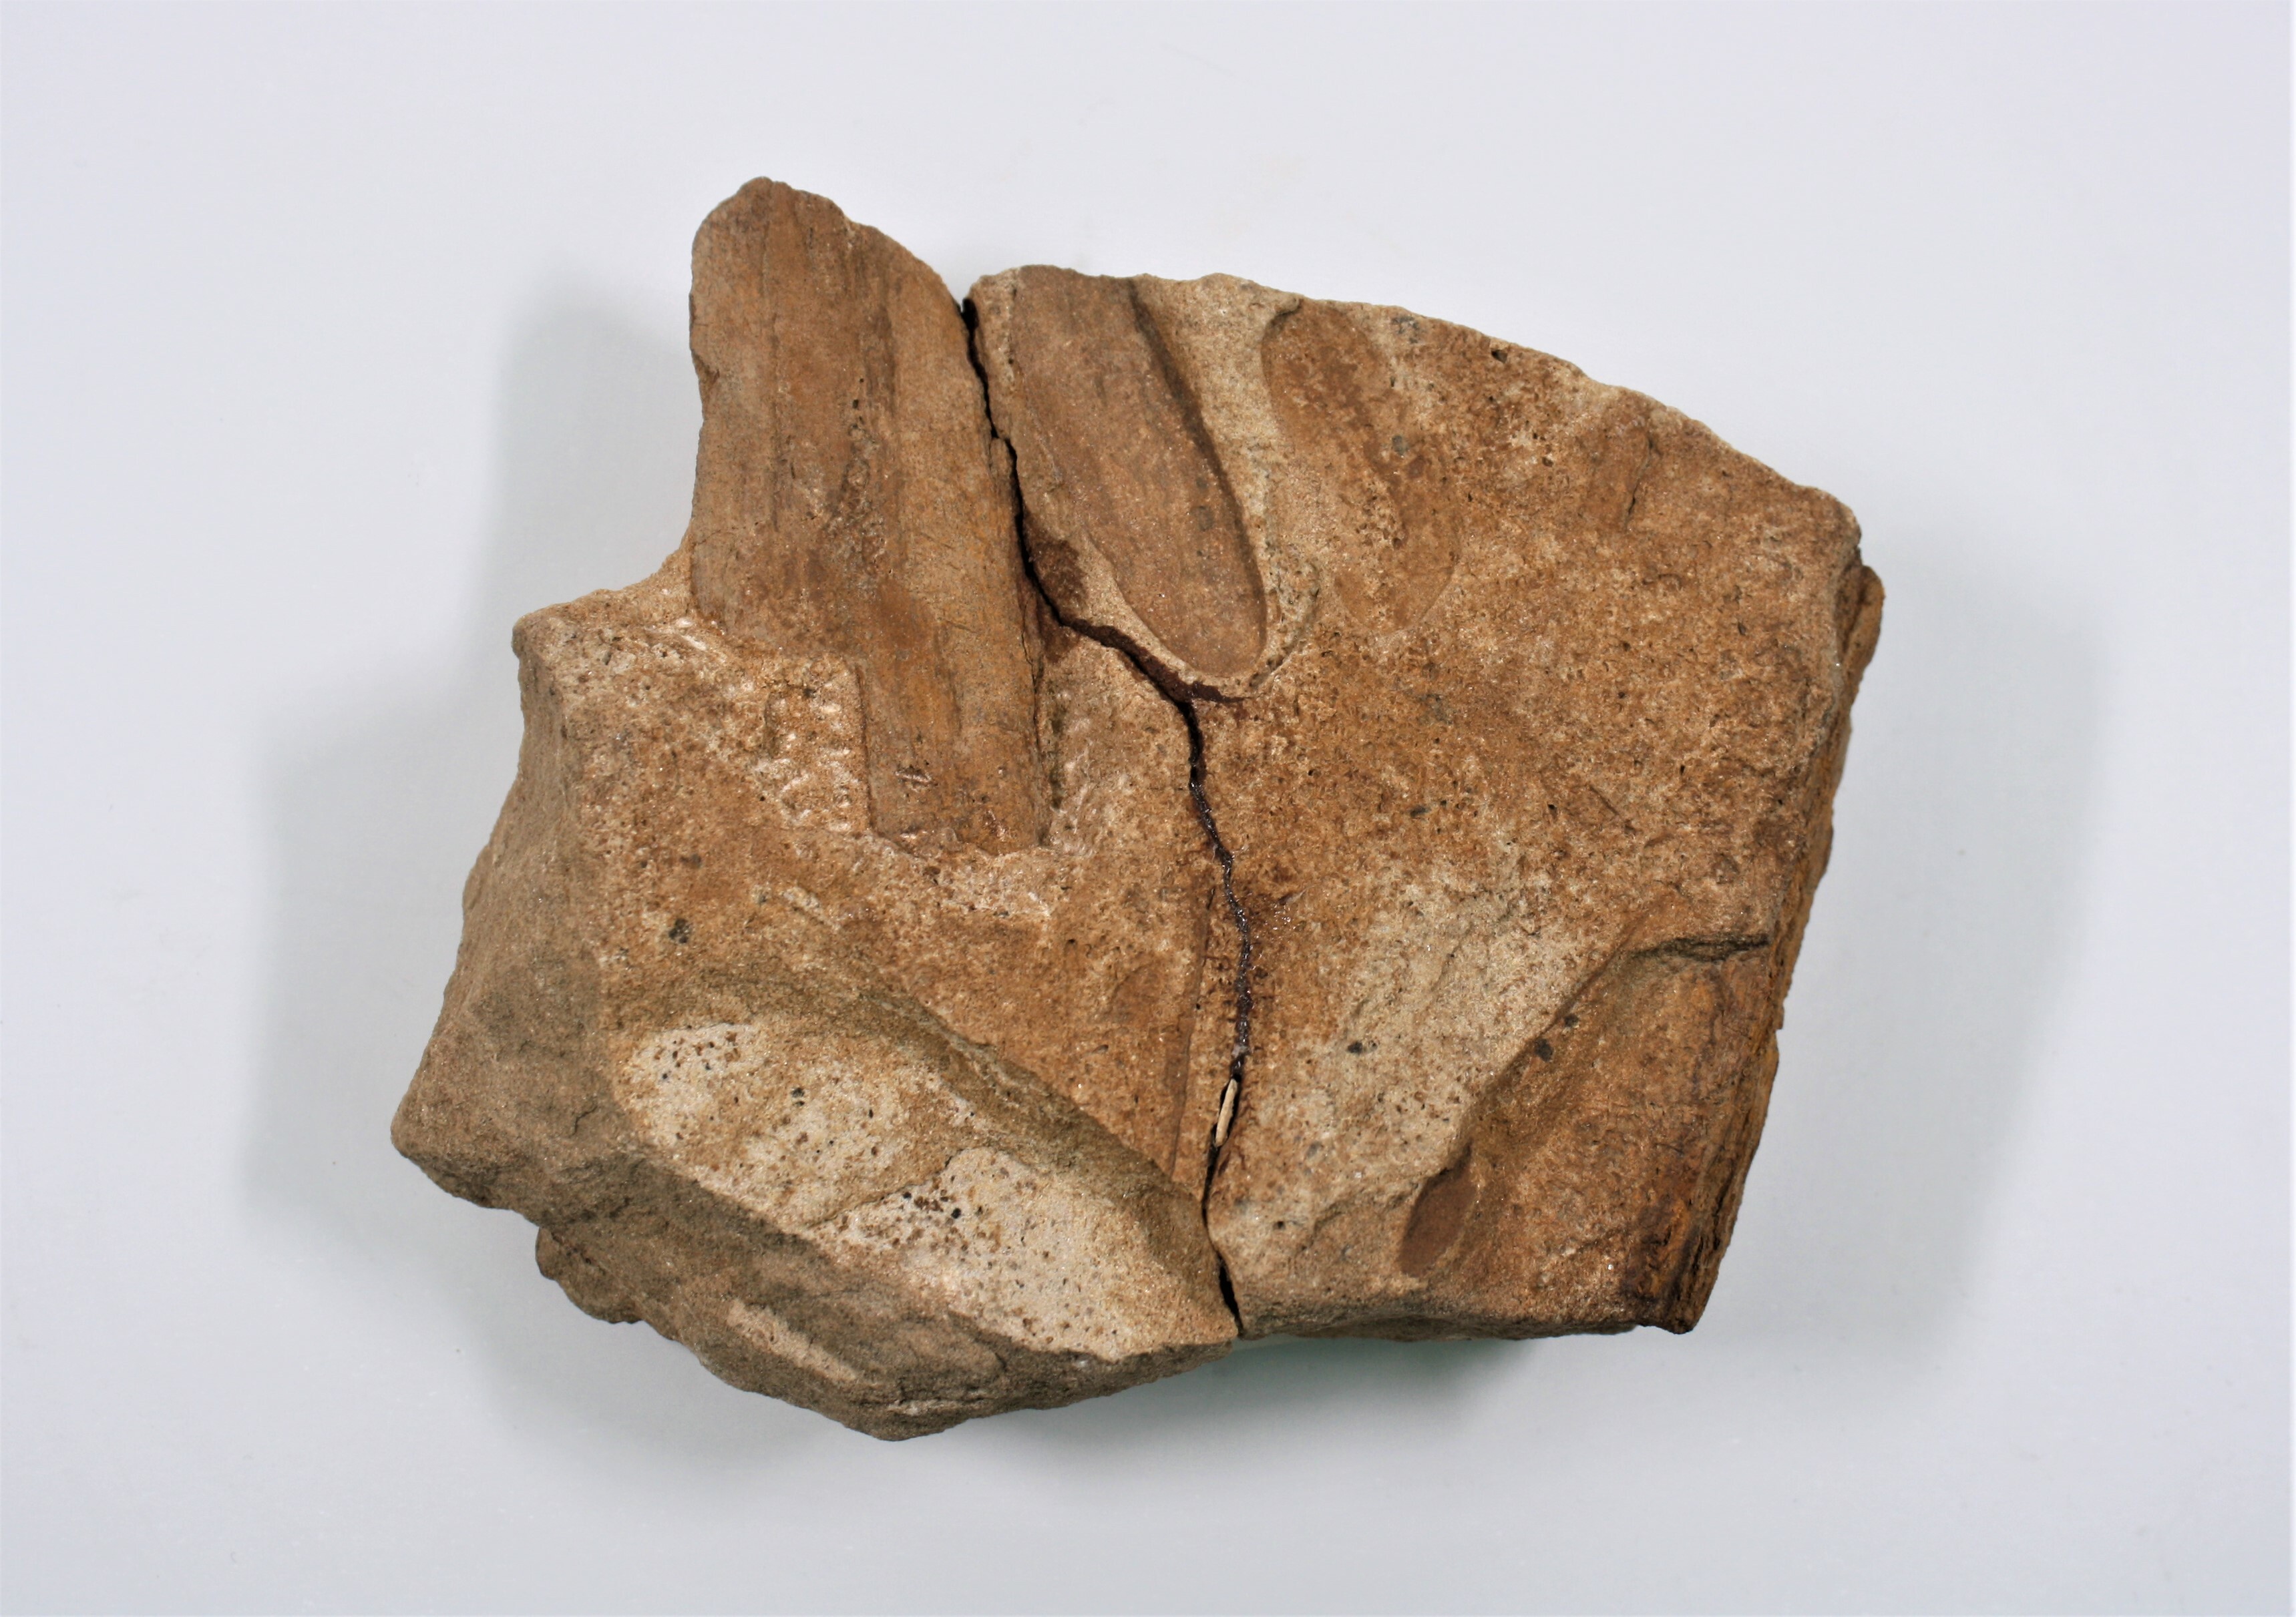 Fliederblättchen von Glossozamites (Drilandmuseum CC BY-NC-SA)